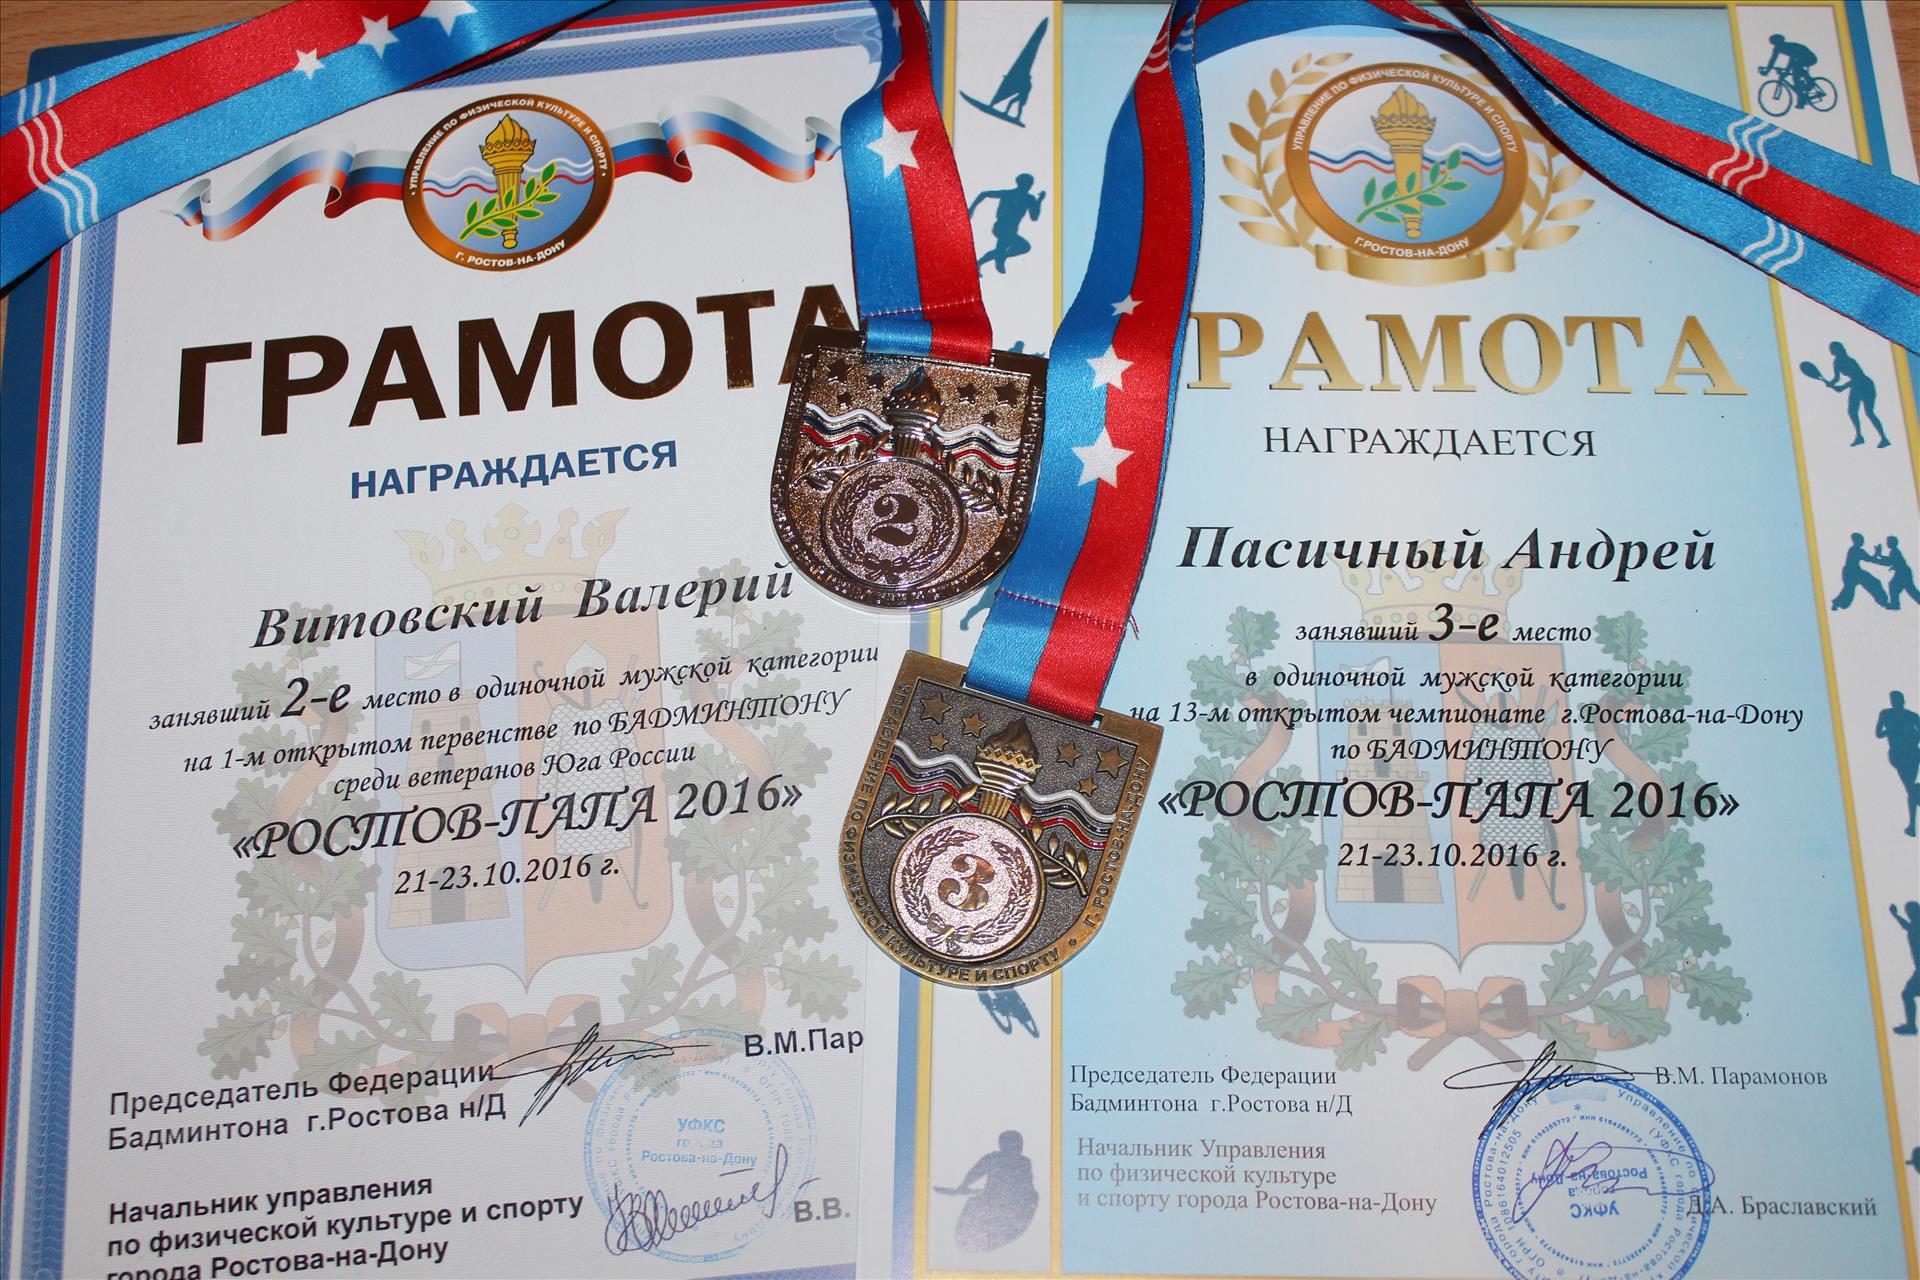 Федерация бадминтона привезла медали из Ростова-на-Дону